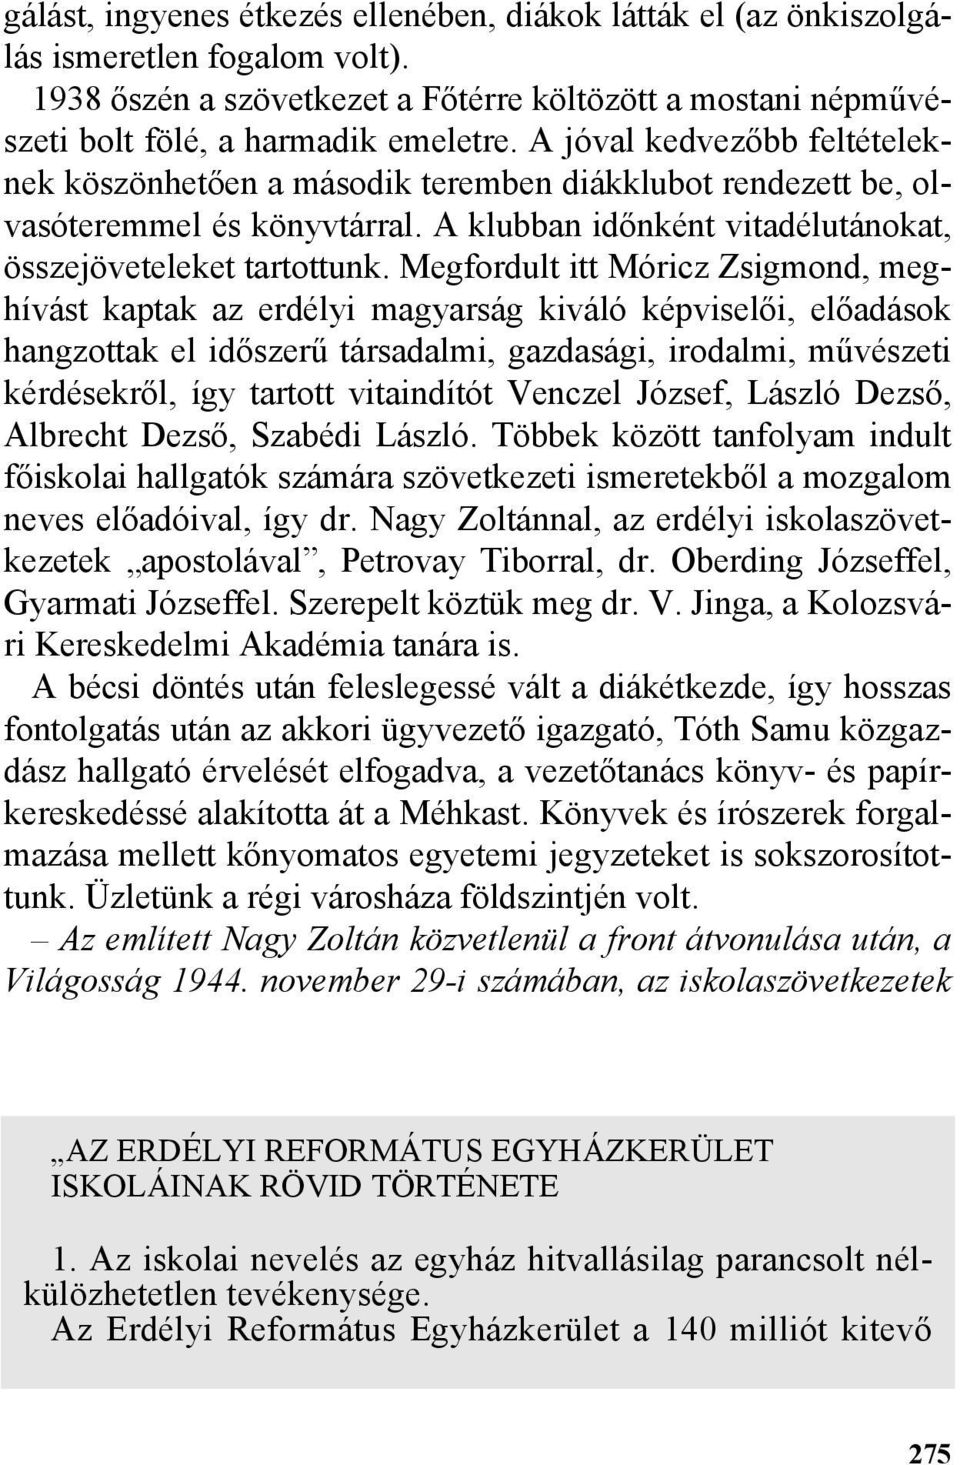 Megfordult itt Móricz Zsigmond, meghívást kaptak az erdélyi magyarság kiváló képviselõi, elõadások hangzottak el idõszerû társadalmi, gazdasági, irodalmi, mûvészeti kérdésekrõl, így tartott